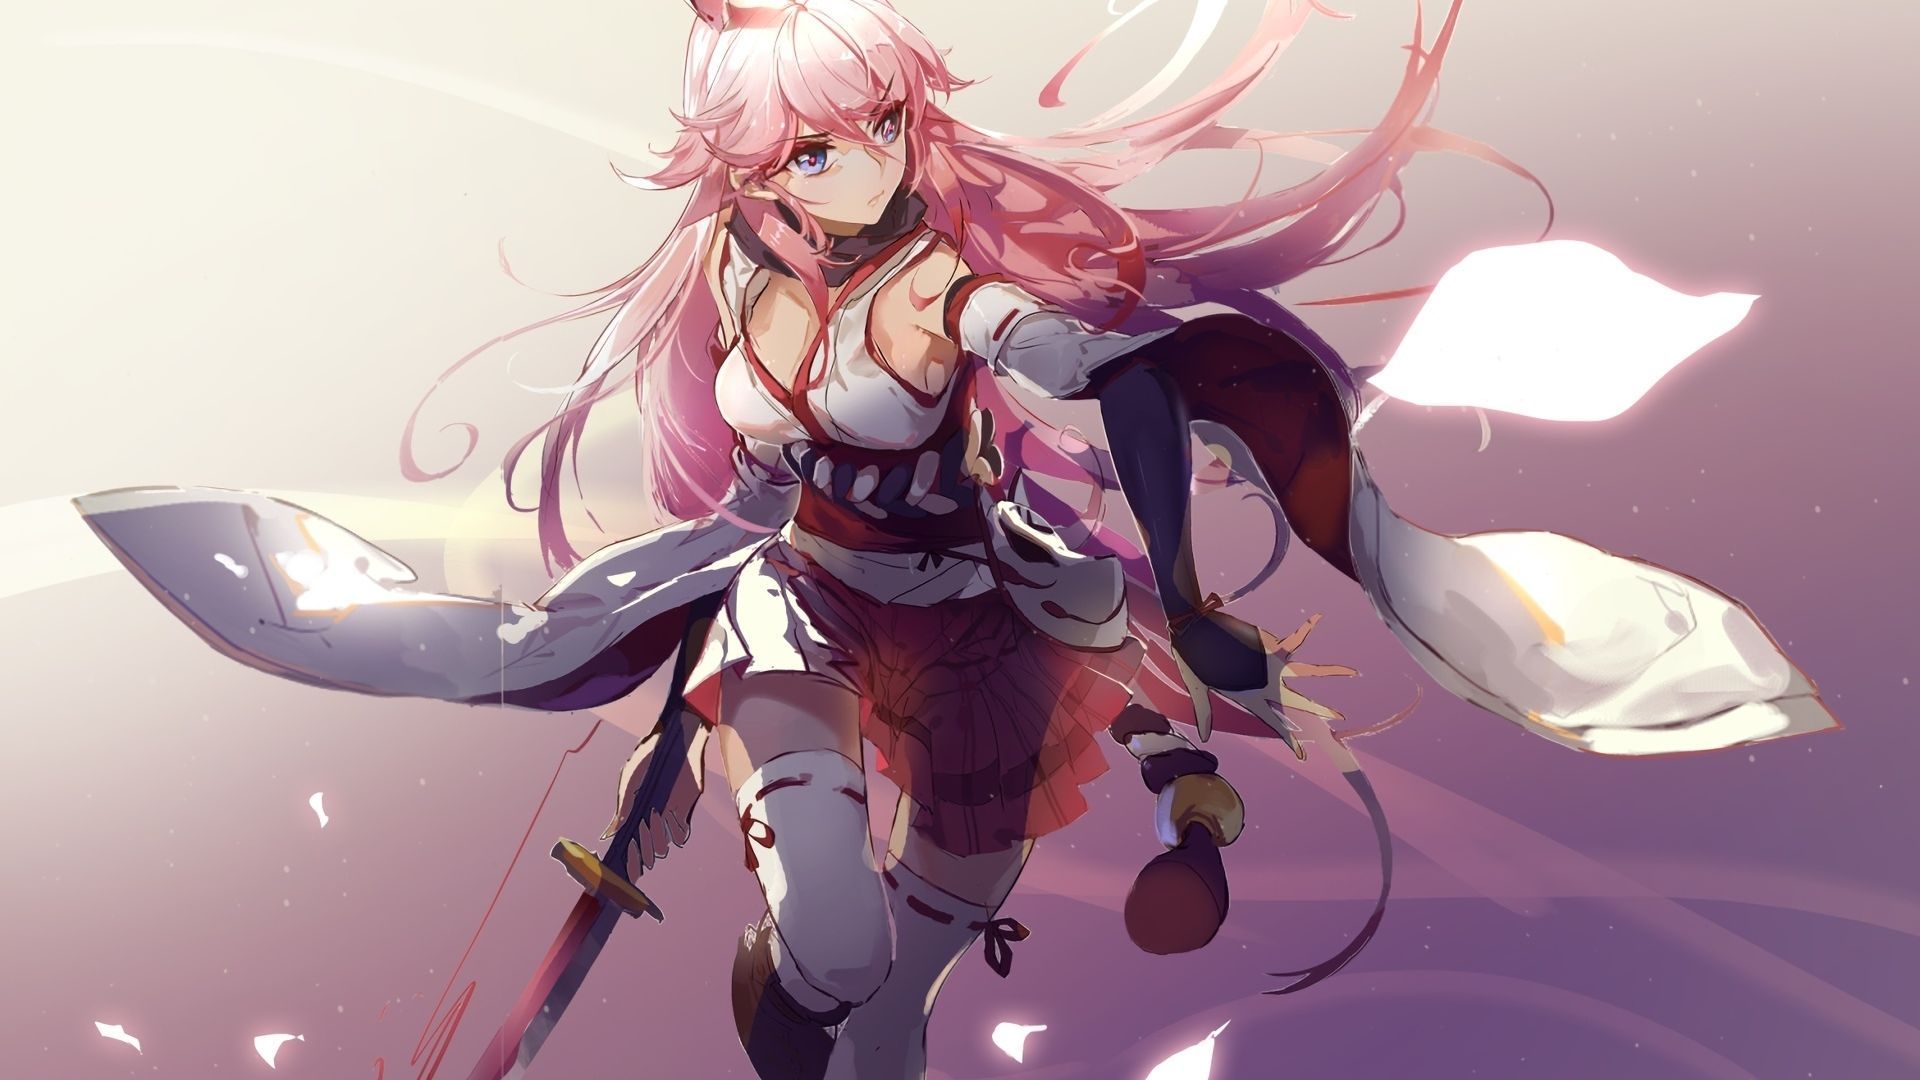 Anime Girl With Sword And Gun